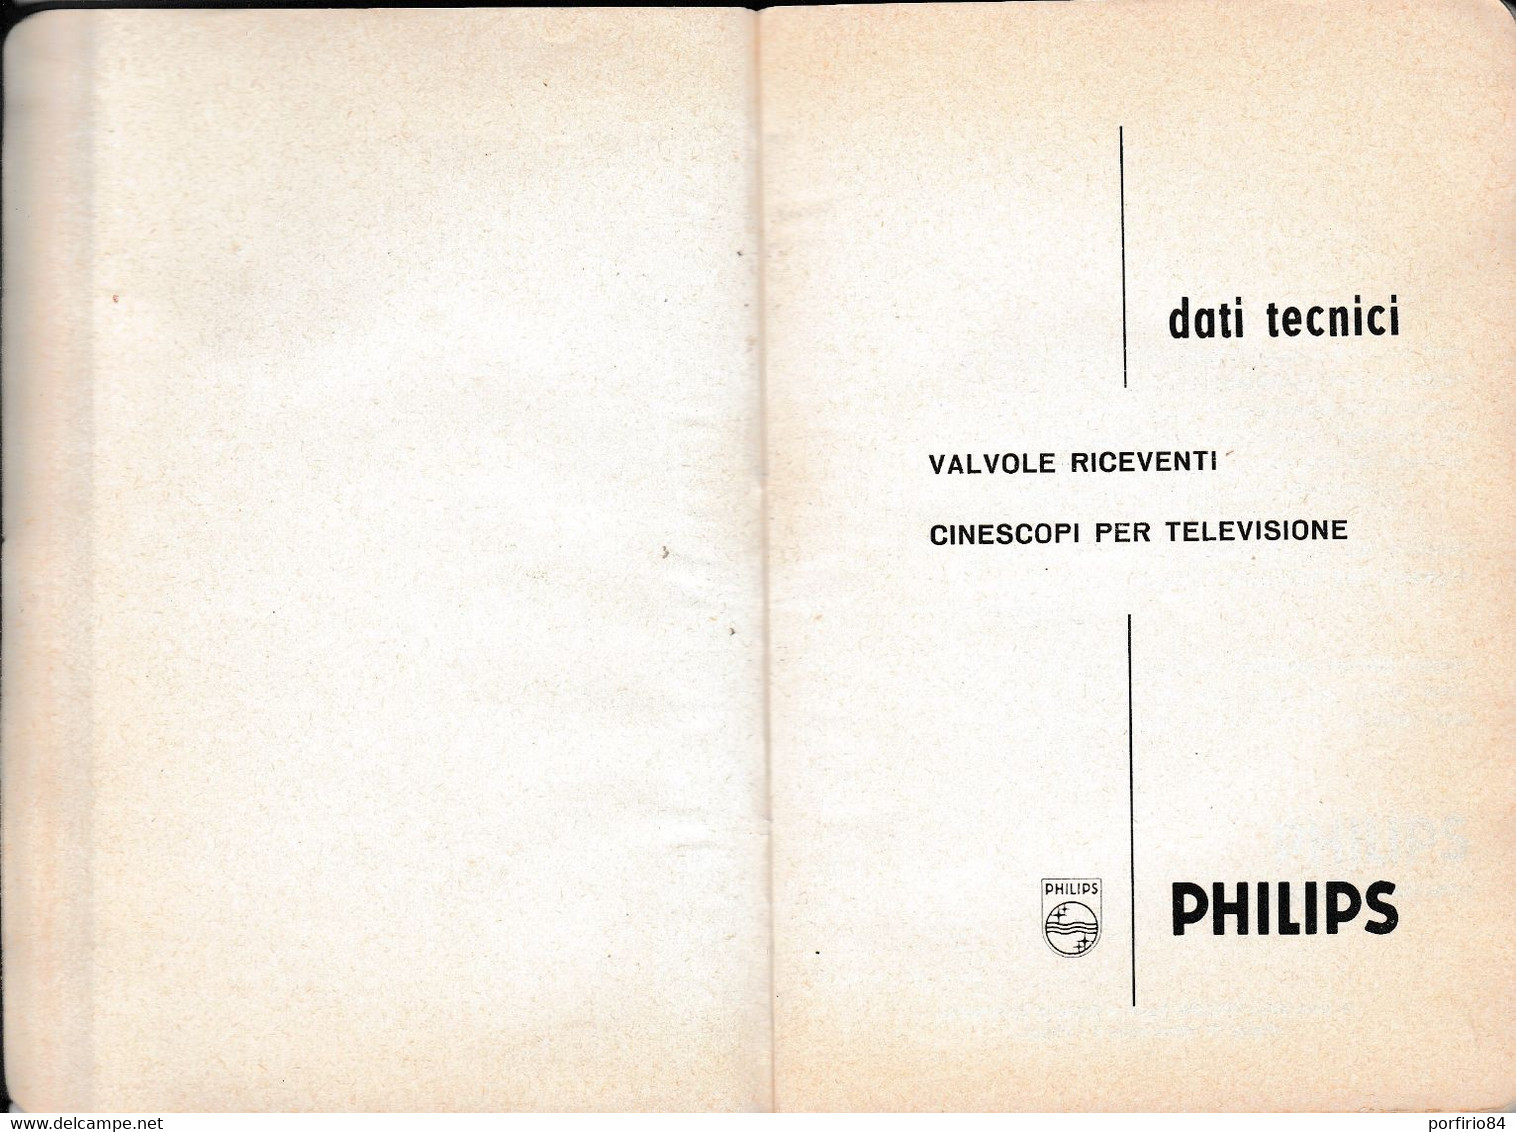 VALVOLE RICEVENTI CINESCOPI PER TELEVISIONE PHILIPS /DATI TECNICI_CATALOGO 1962 - Cinema E Musica